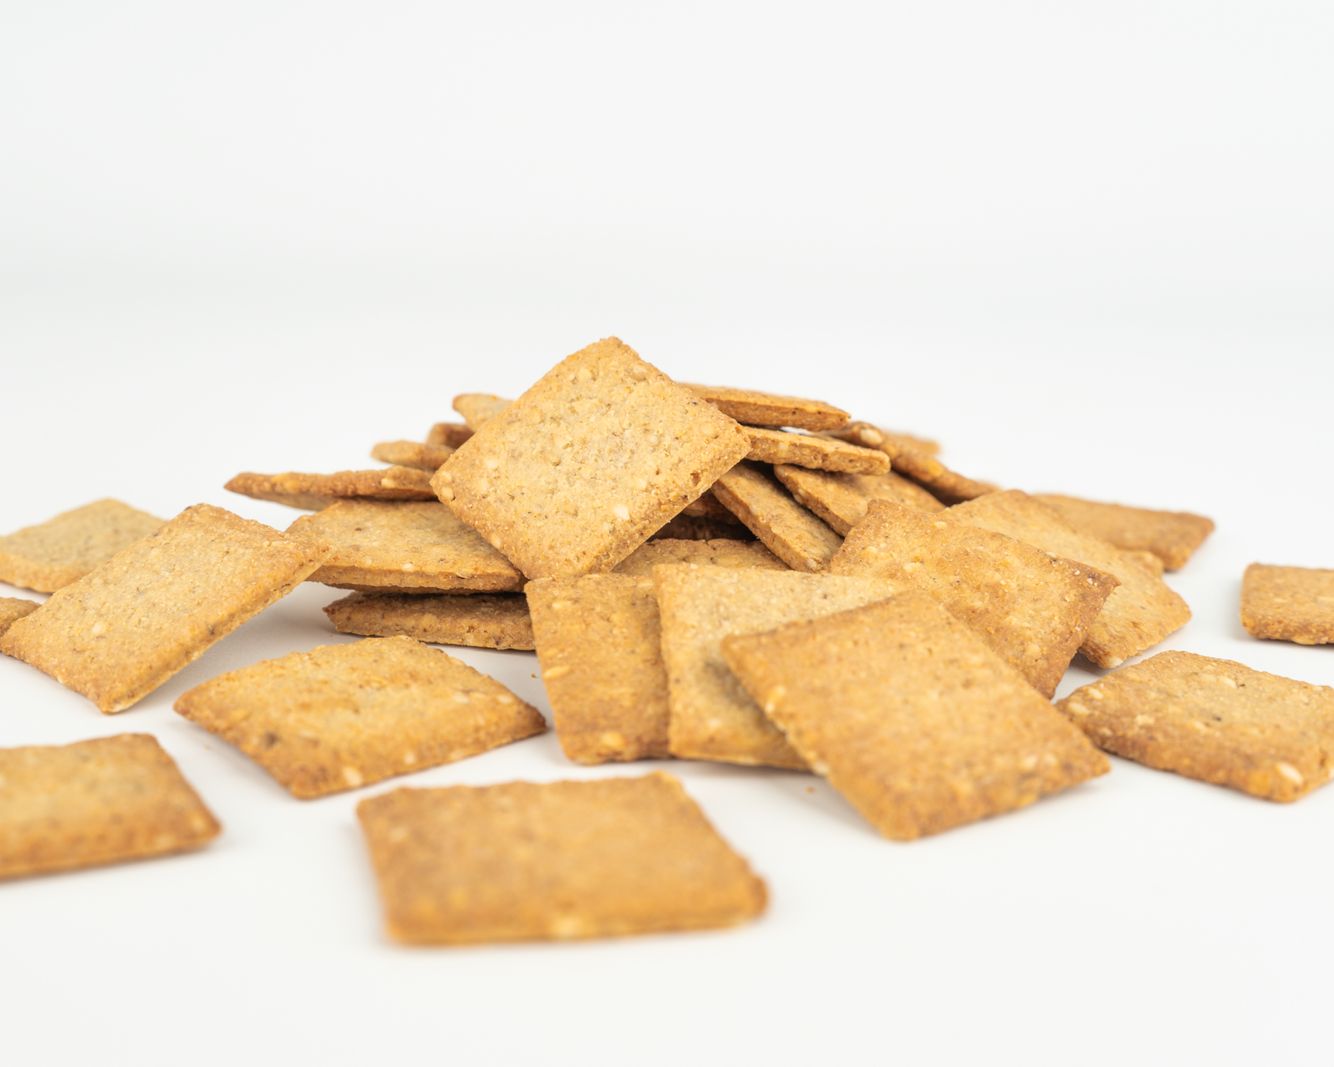 Vilgain Organic Quinoa Crackers